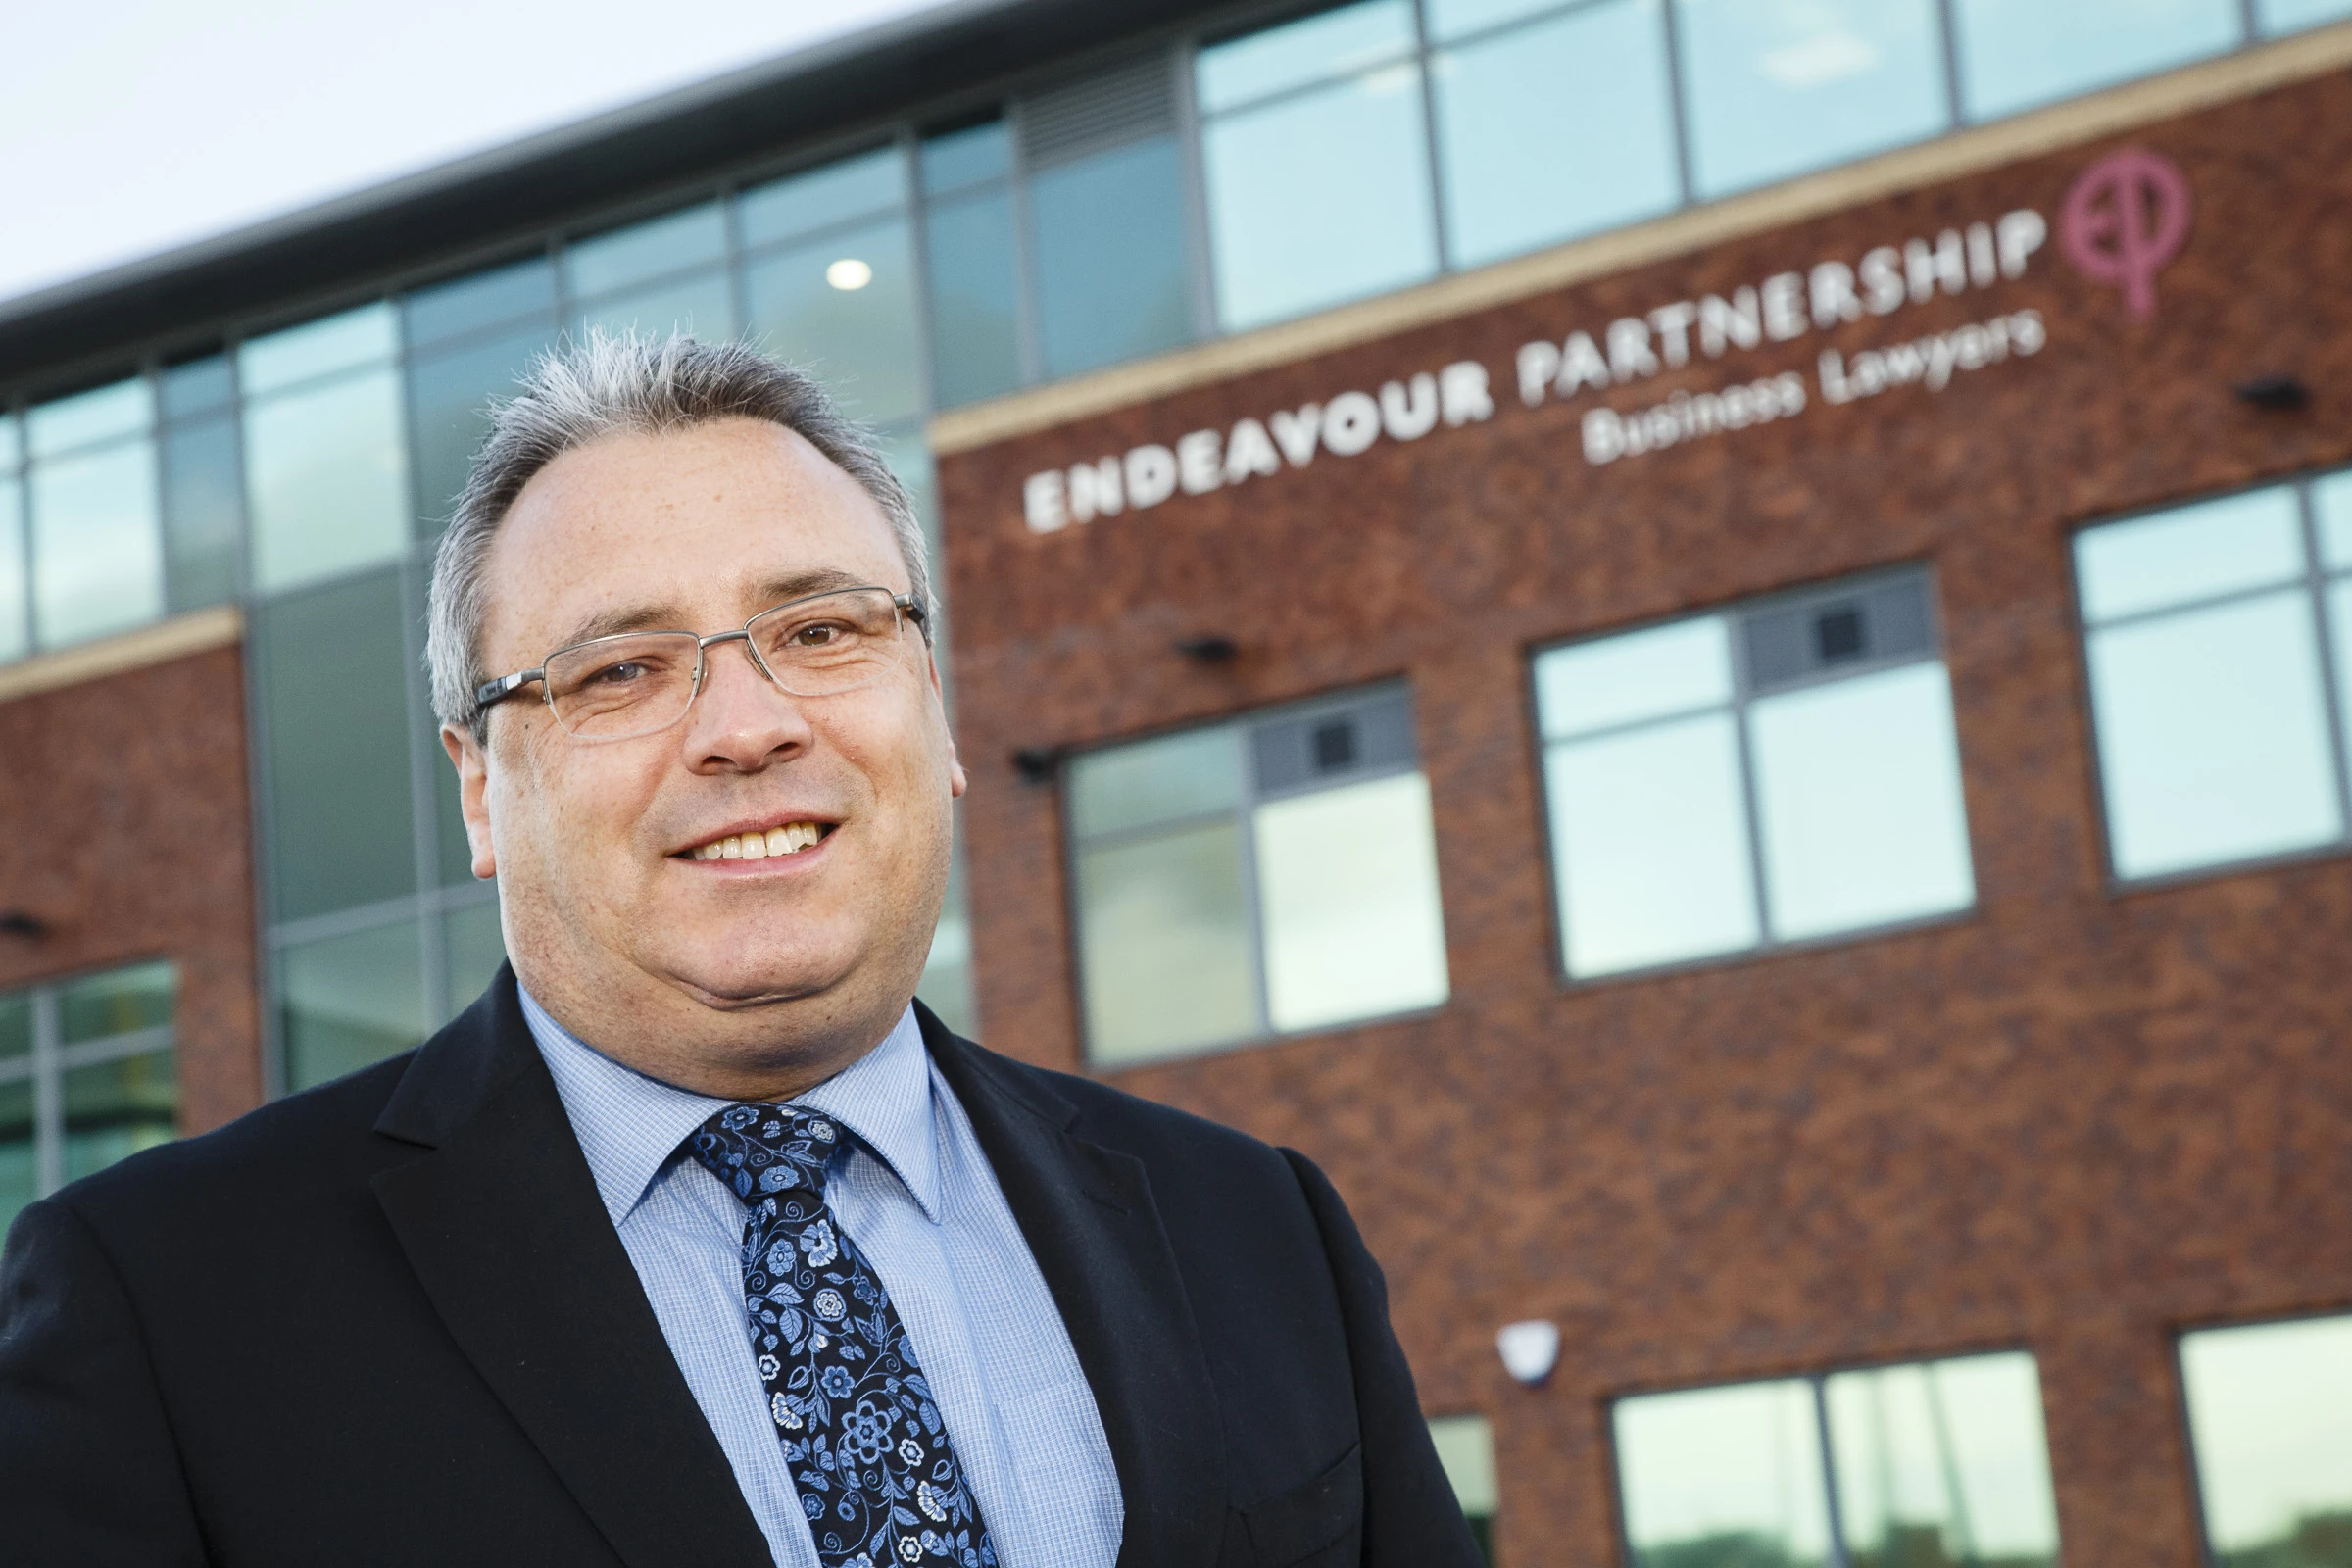 Stephen Elliott, Endeavour Partnership